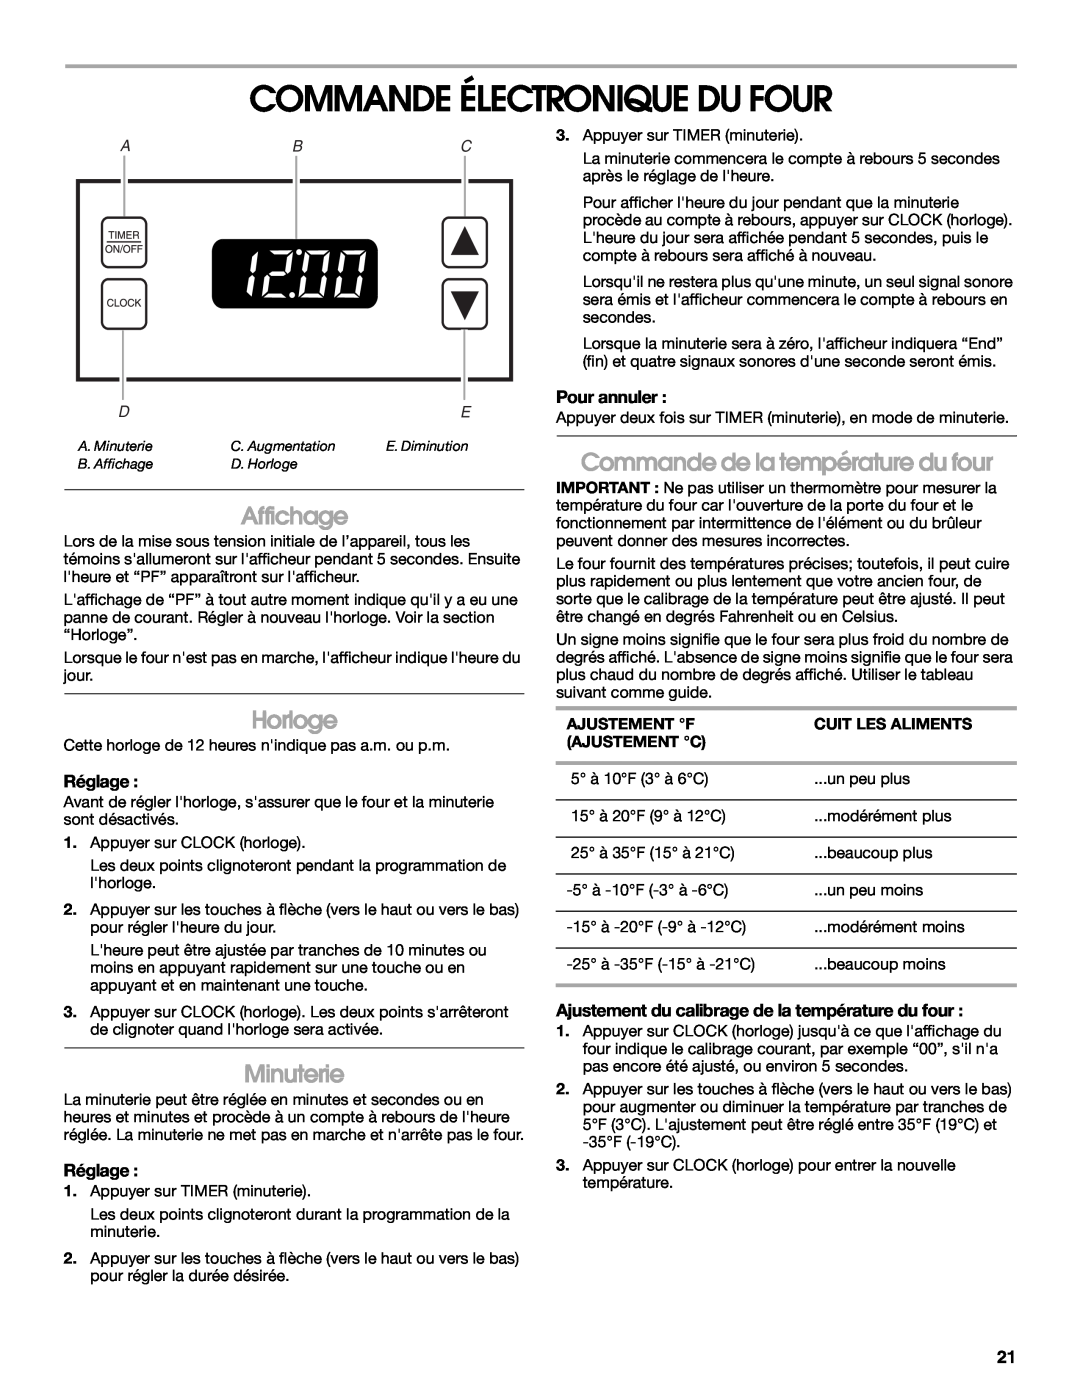 Whirlpool W10017710 manual Commande Électronique Du Four, Affichage, Horloge, Minuterie, Commande de la température du four 